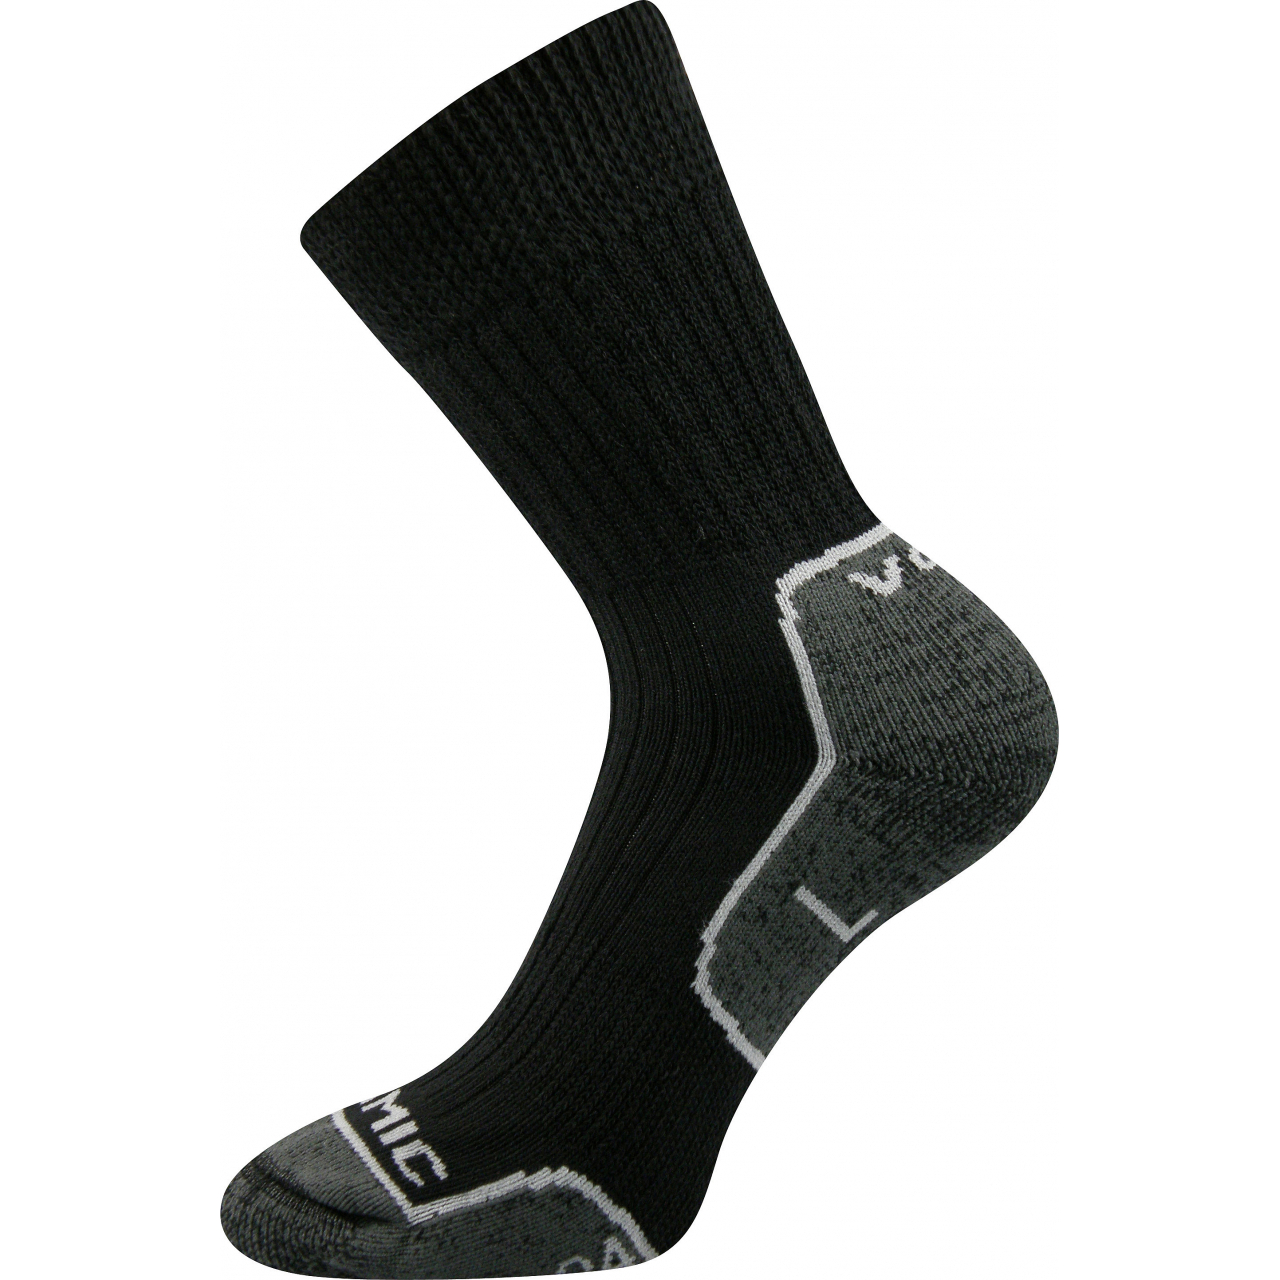 Ponožky unisex termo Voxx Zenith L + P - černé-šedé, 35-37